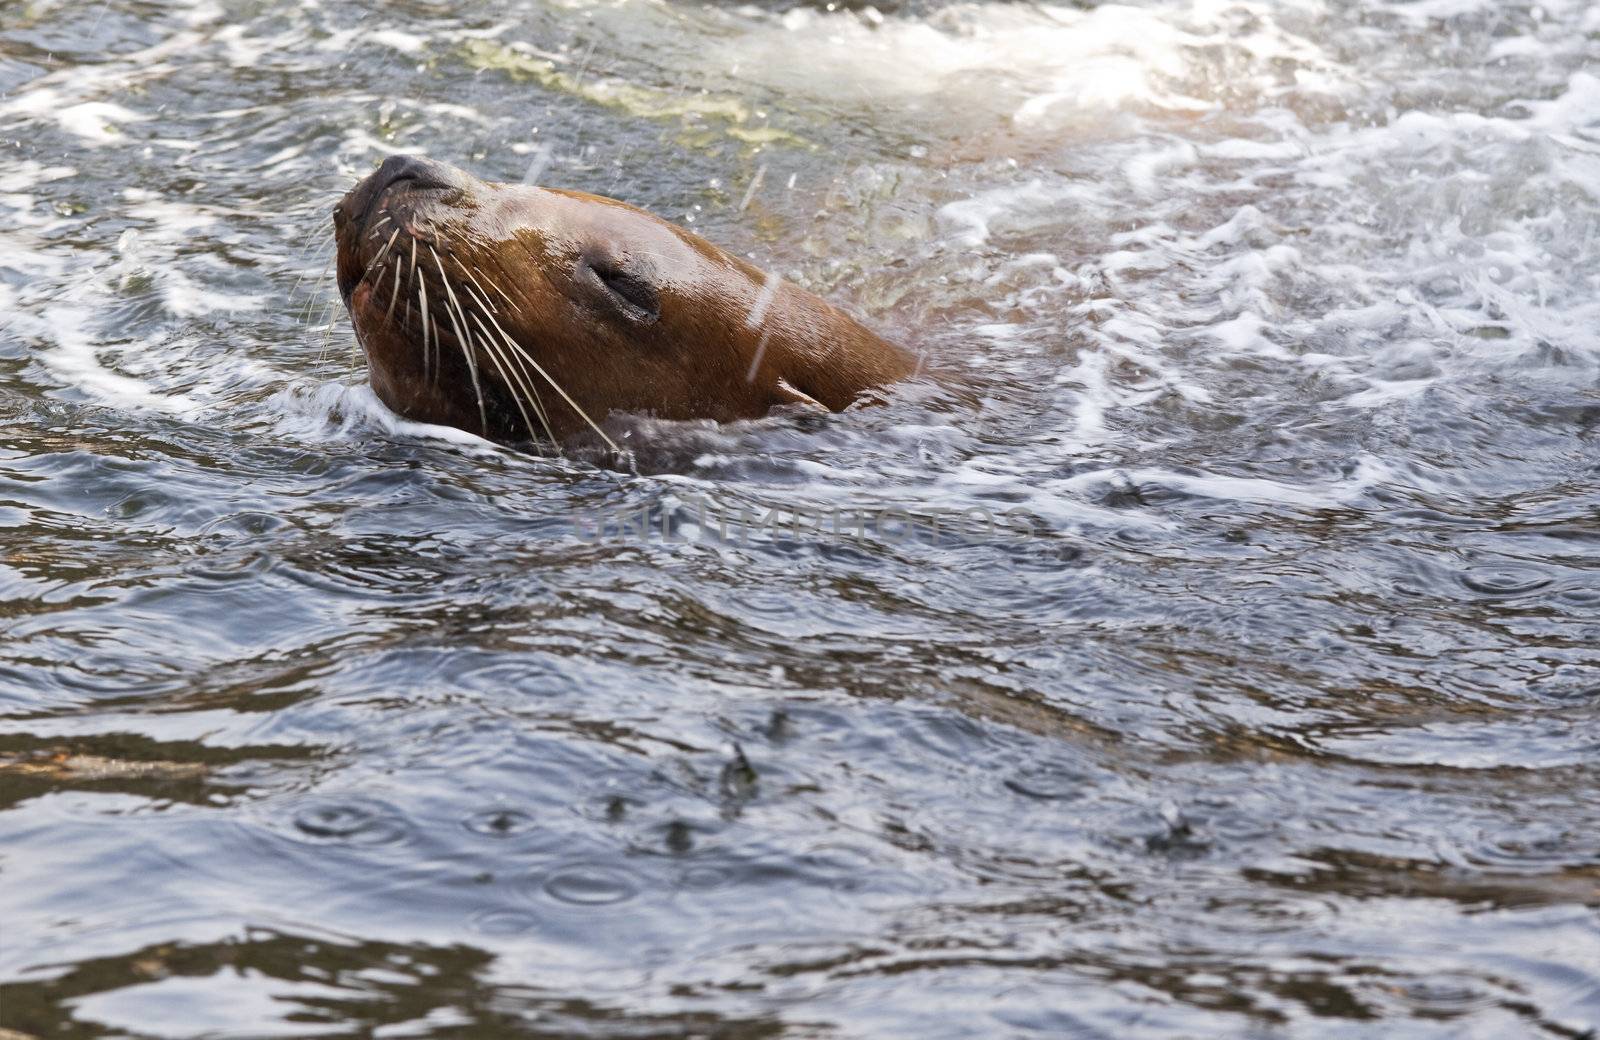 Sea-lion swimming and splashing water